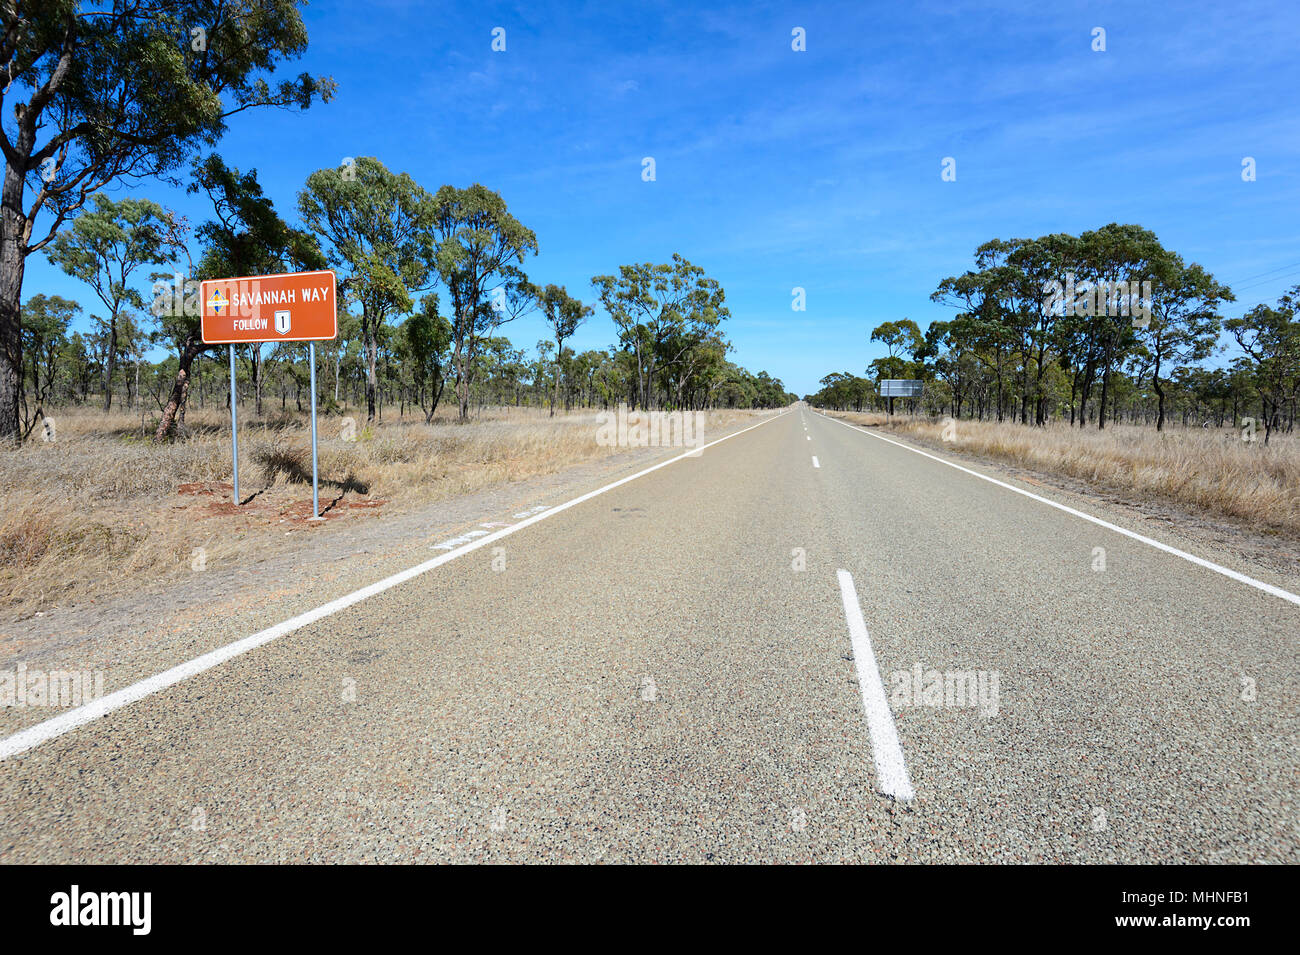 Savannah Way est une route goudronnée à travers les régions éloignées et isolées, Queensland QLD, Australie Banque D'Images